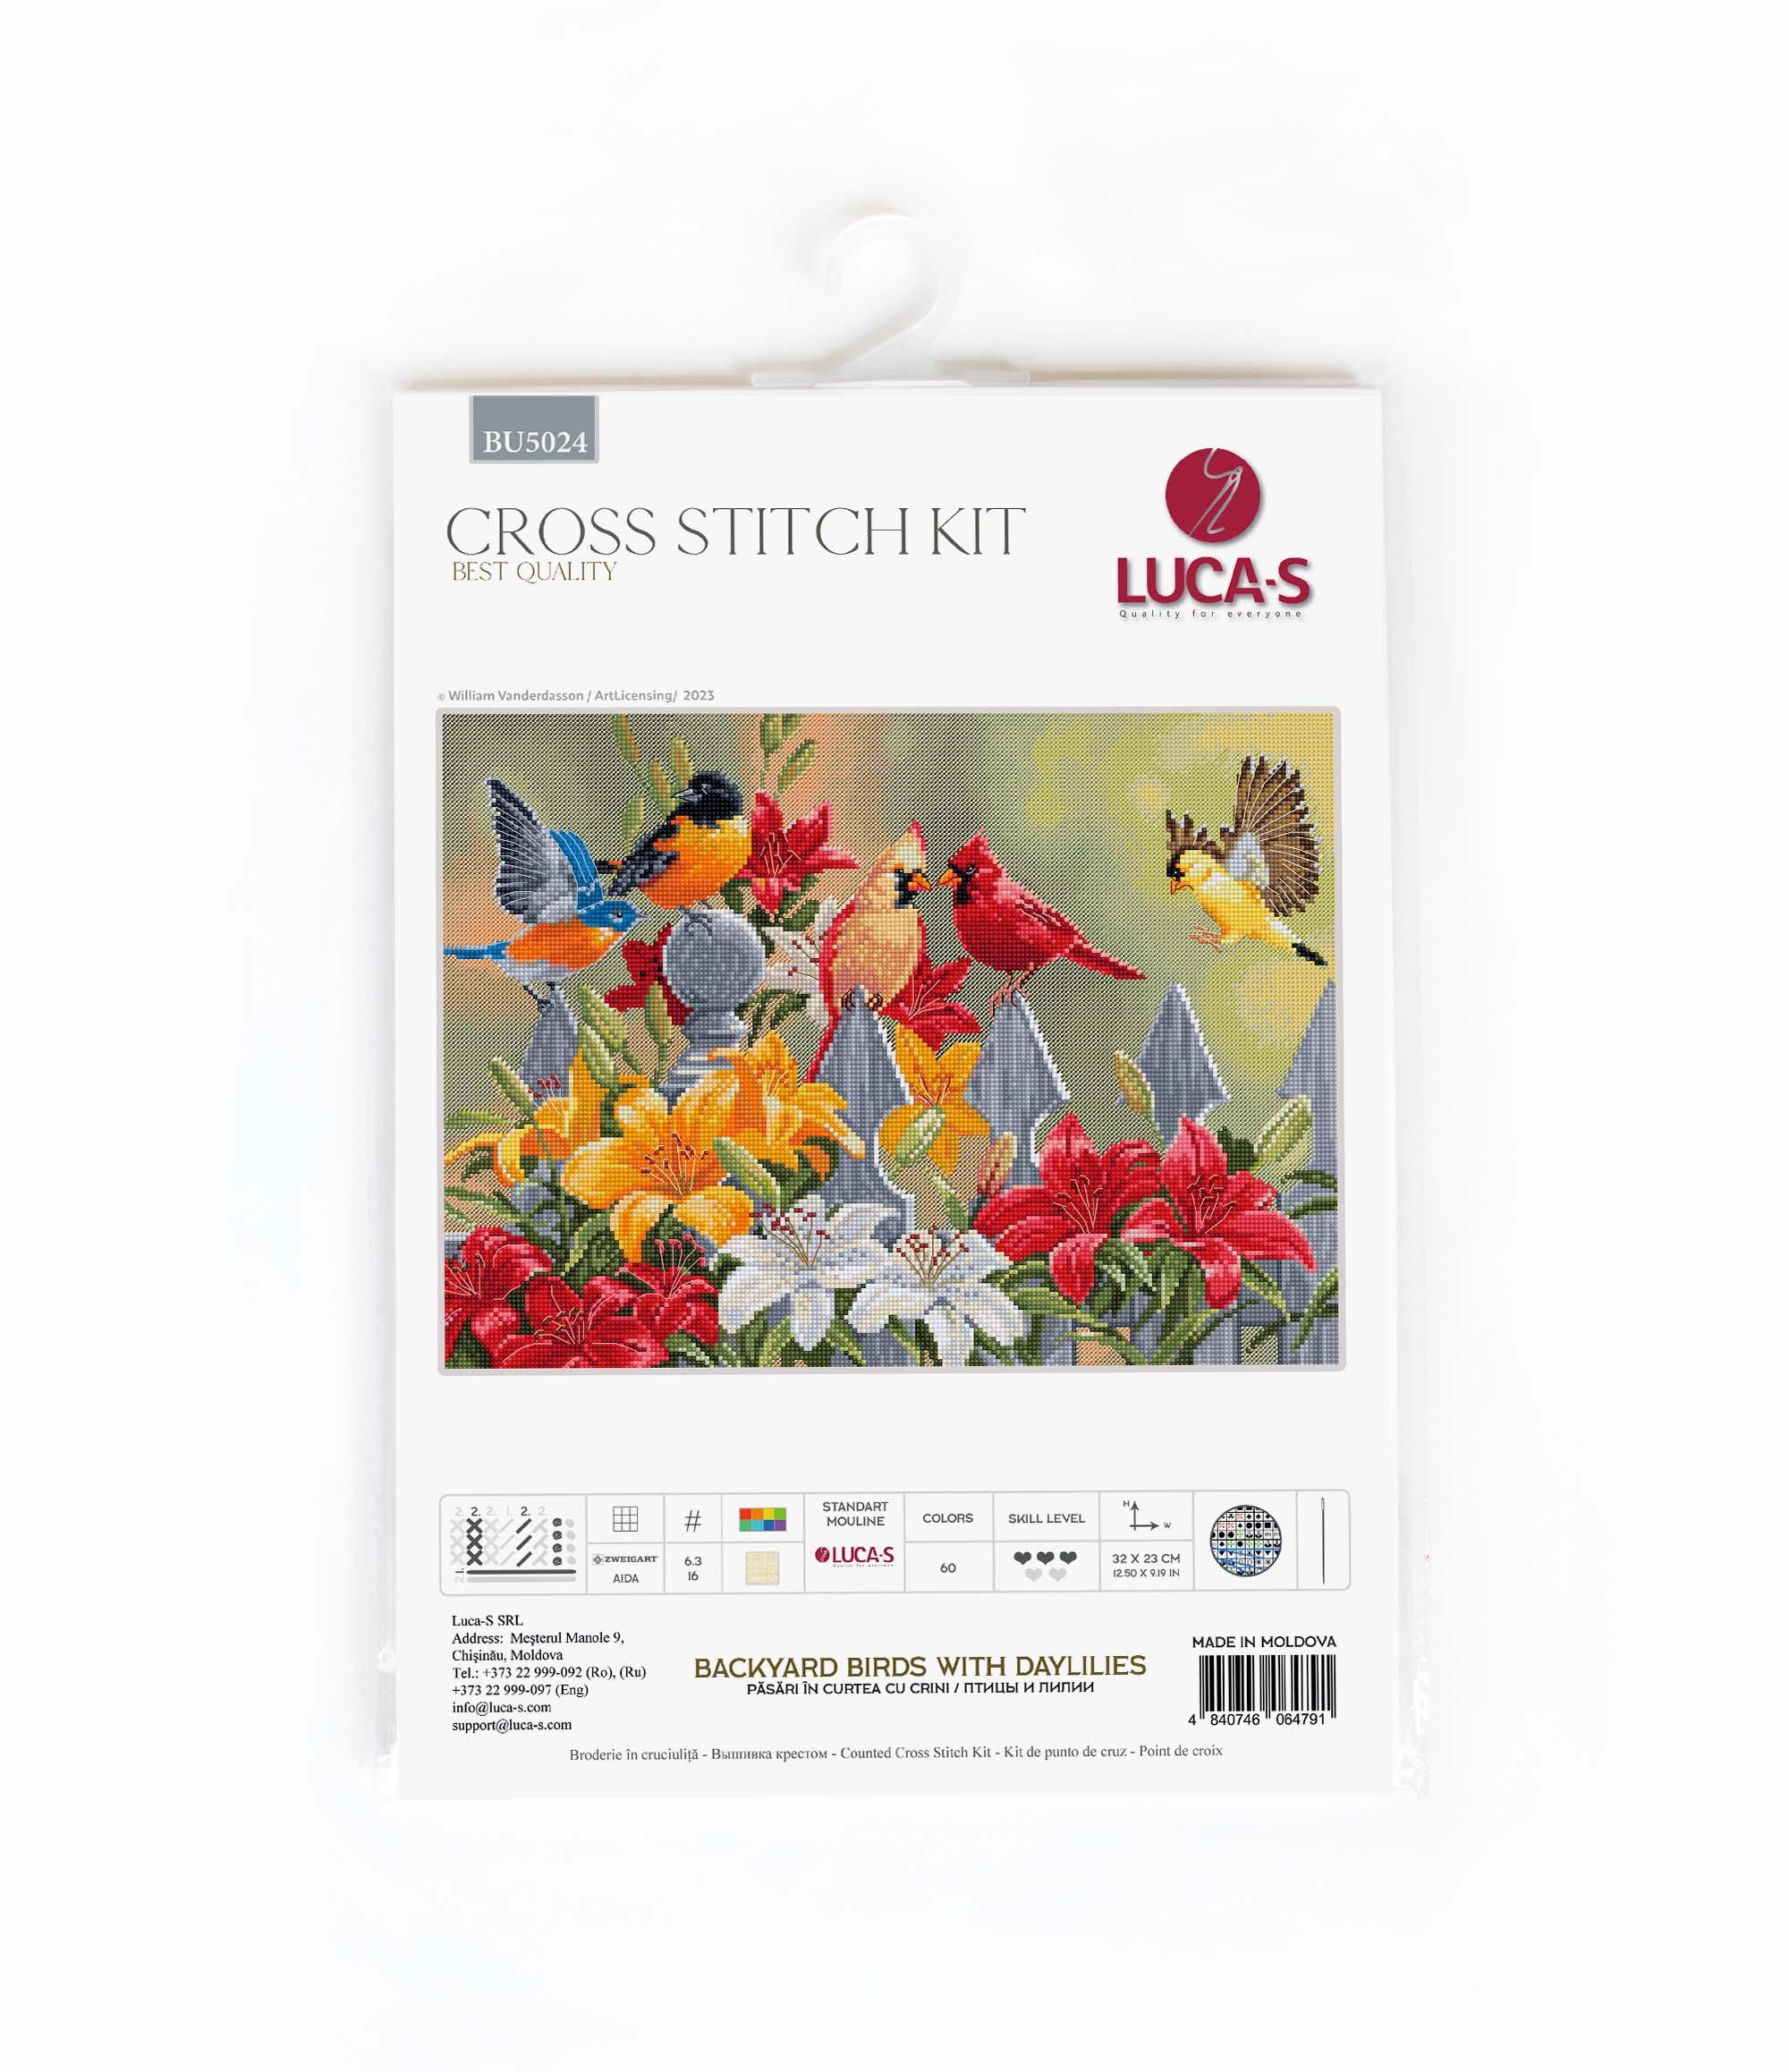 Cross Stitch Kit Luca-S - Backyard Birds with Daylilies, BU5024 - Luca-S Cross Stitch Kits